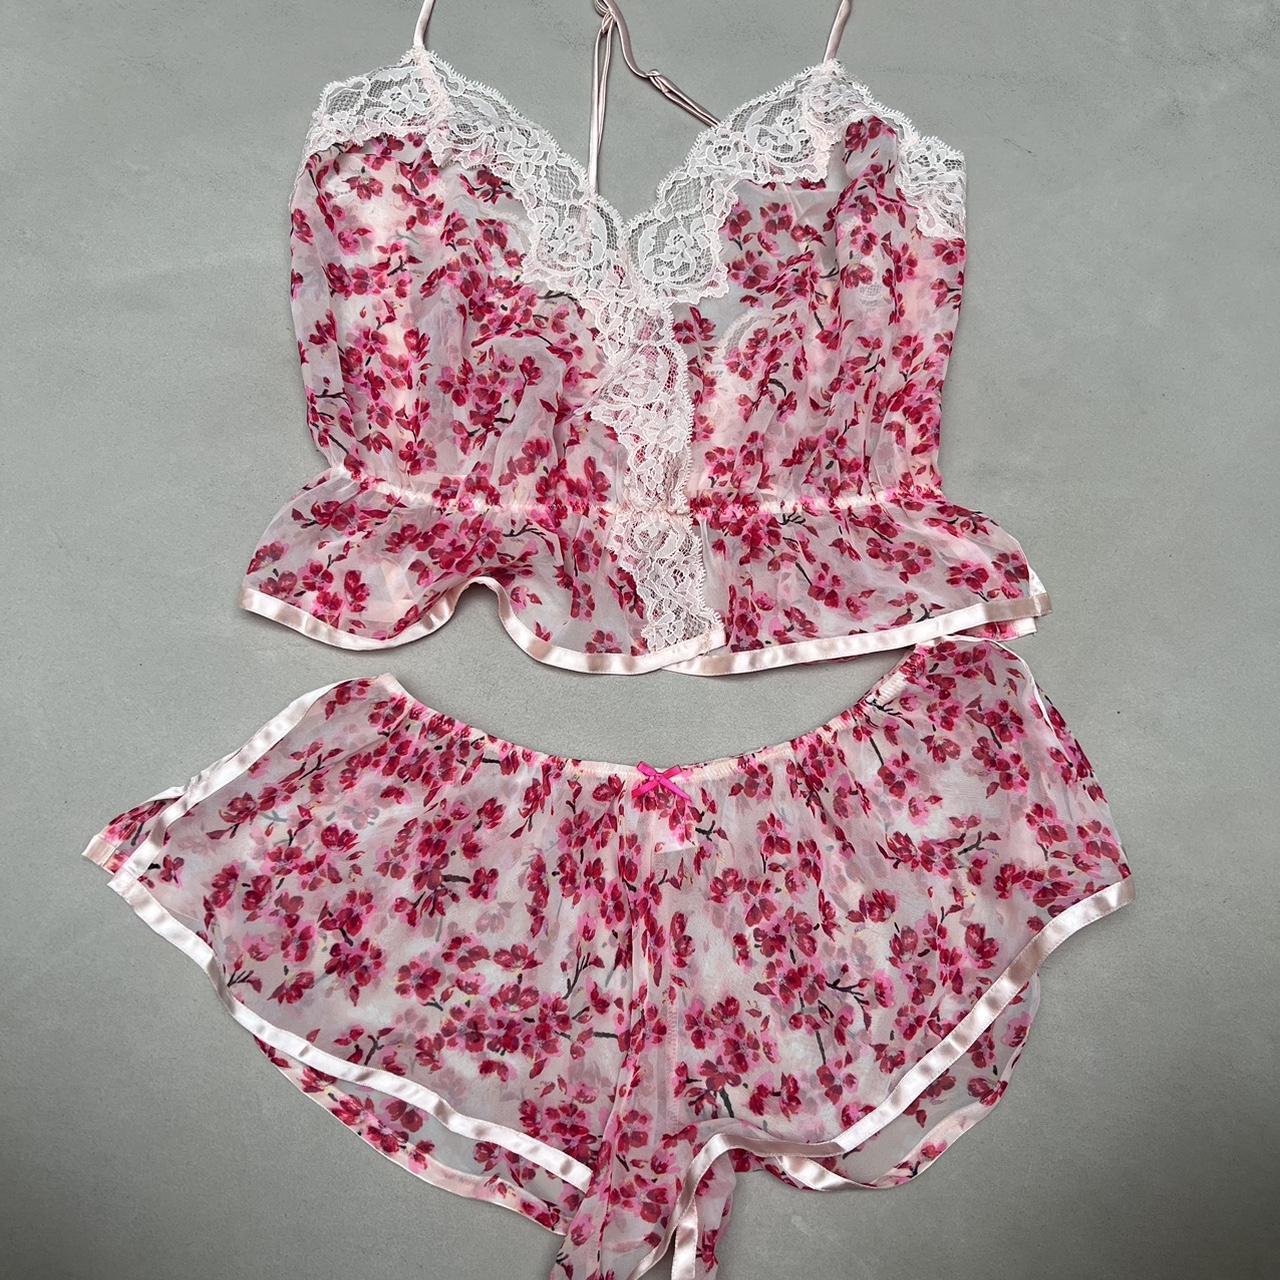 Victoria's Secret Women's Pink Nightwear | Depop